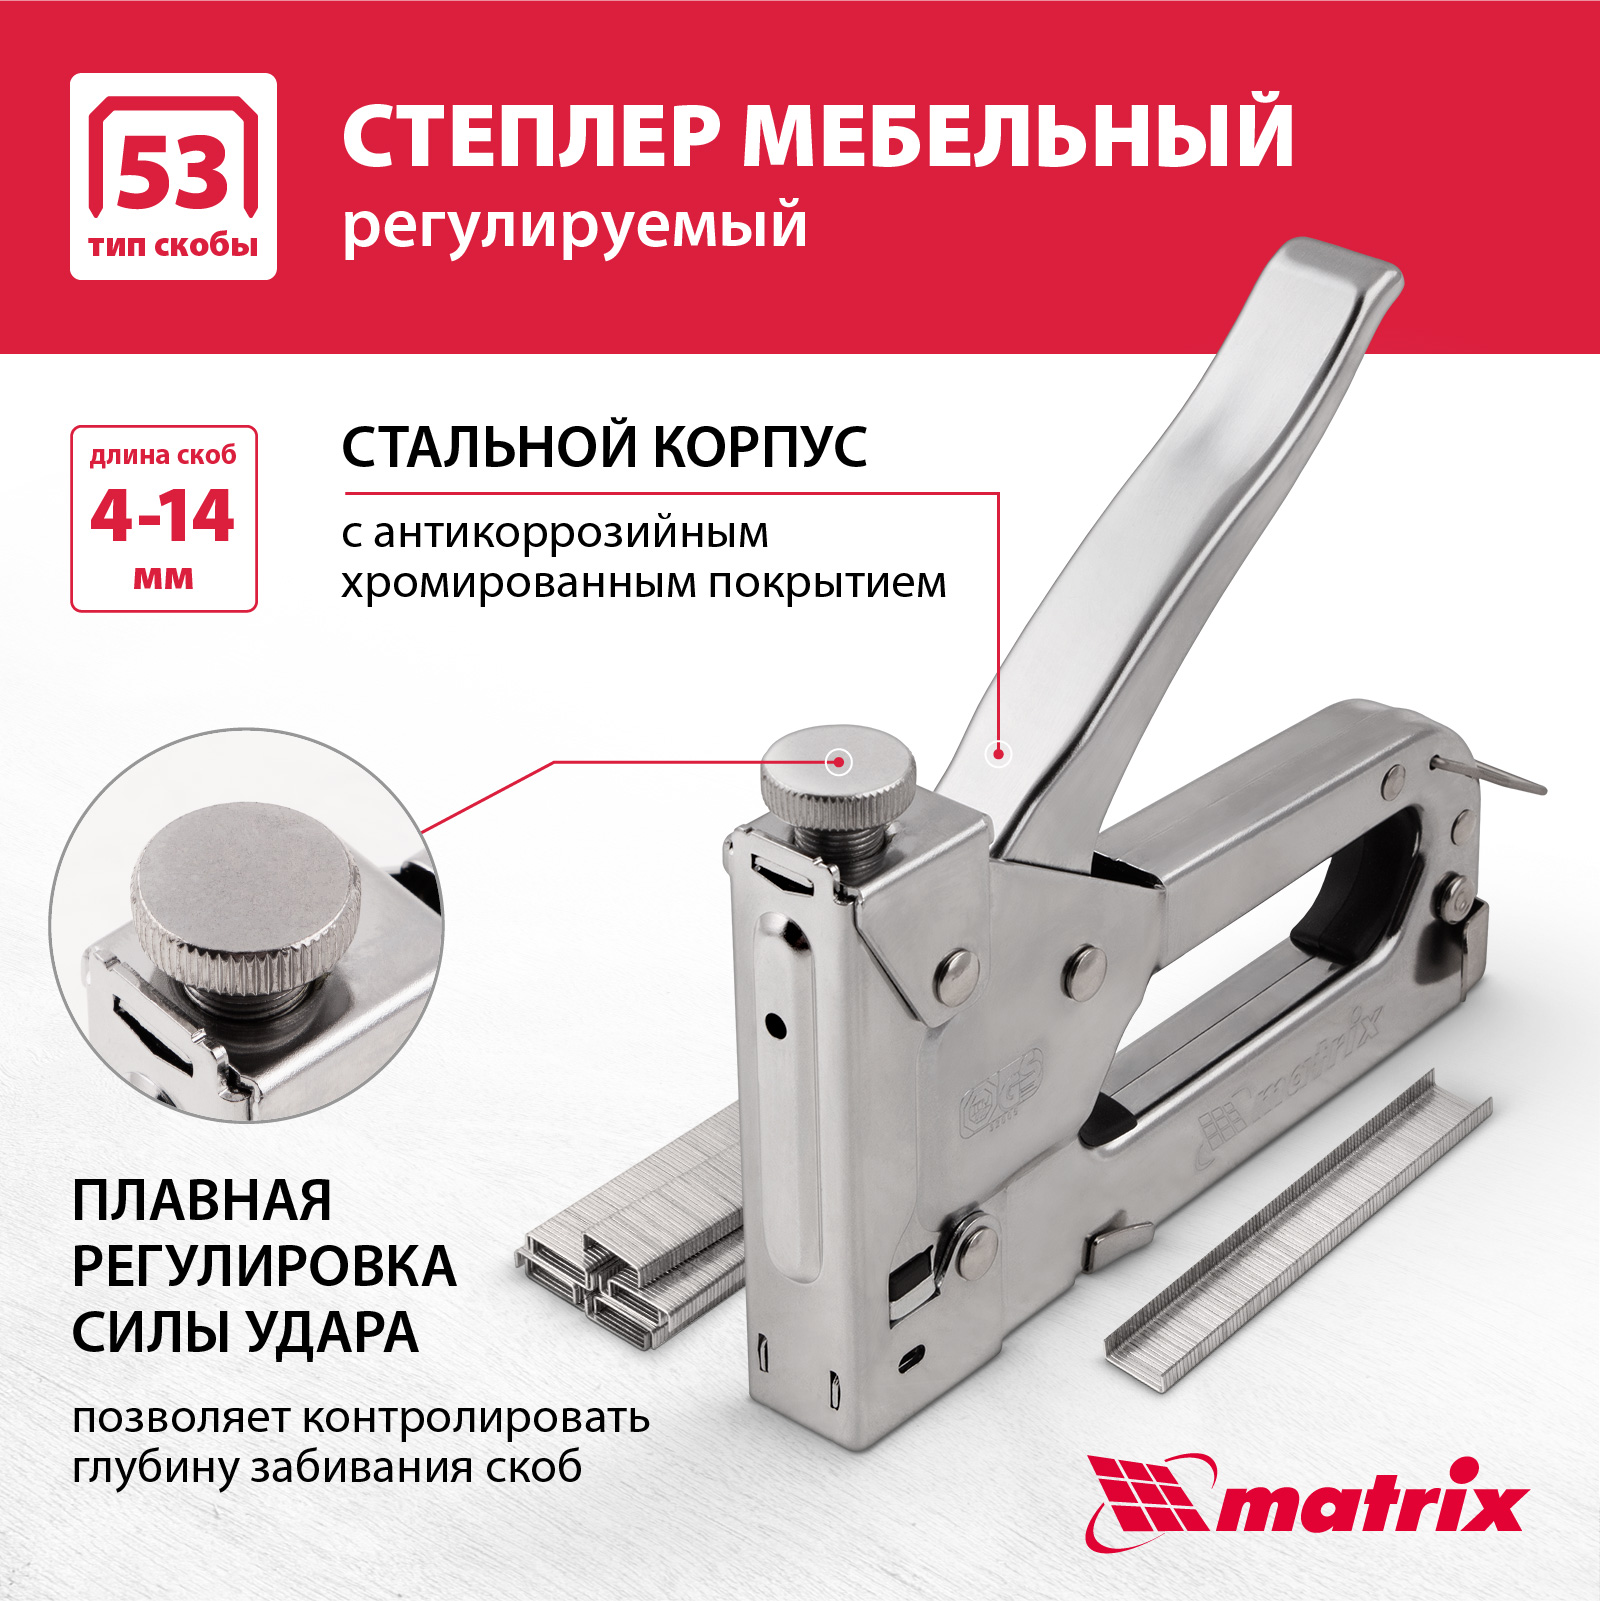 Степлер мебельный регулируемый MATRIX 40902 тип скобы 53, 4-14 мм регулируемый мебельный степлер sturm